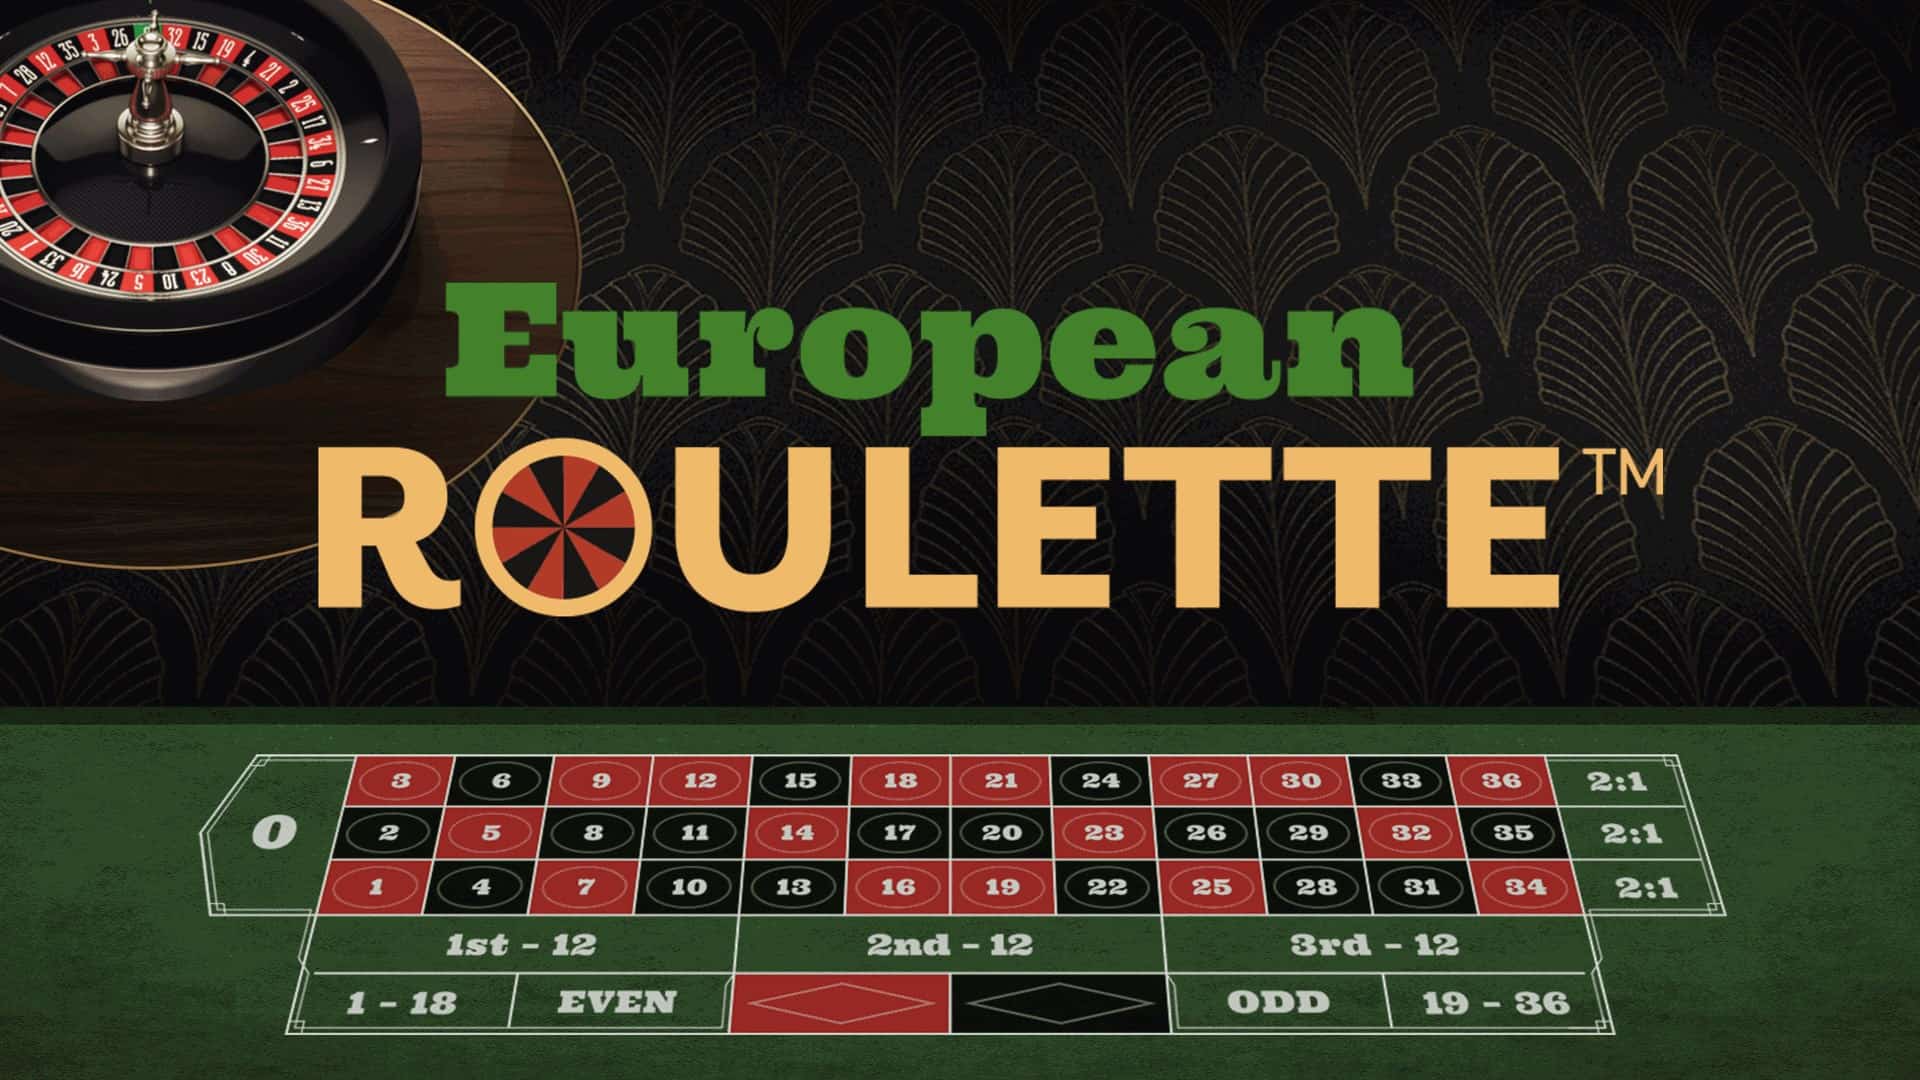 Kinh nghiệm đặt cược trong Roulette giúp bạn có chiến thắng dễ dàng